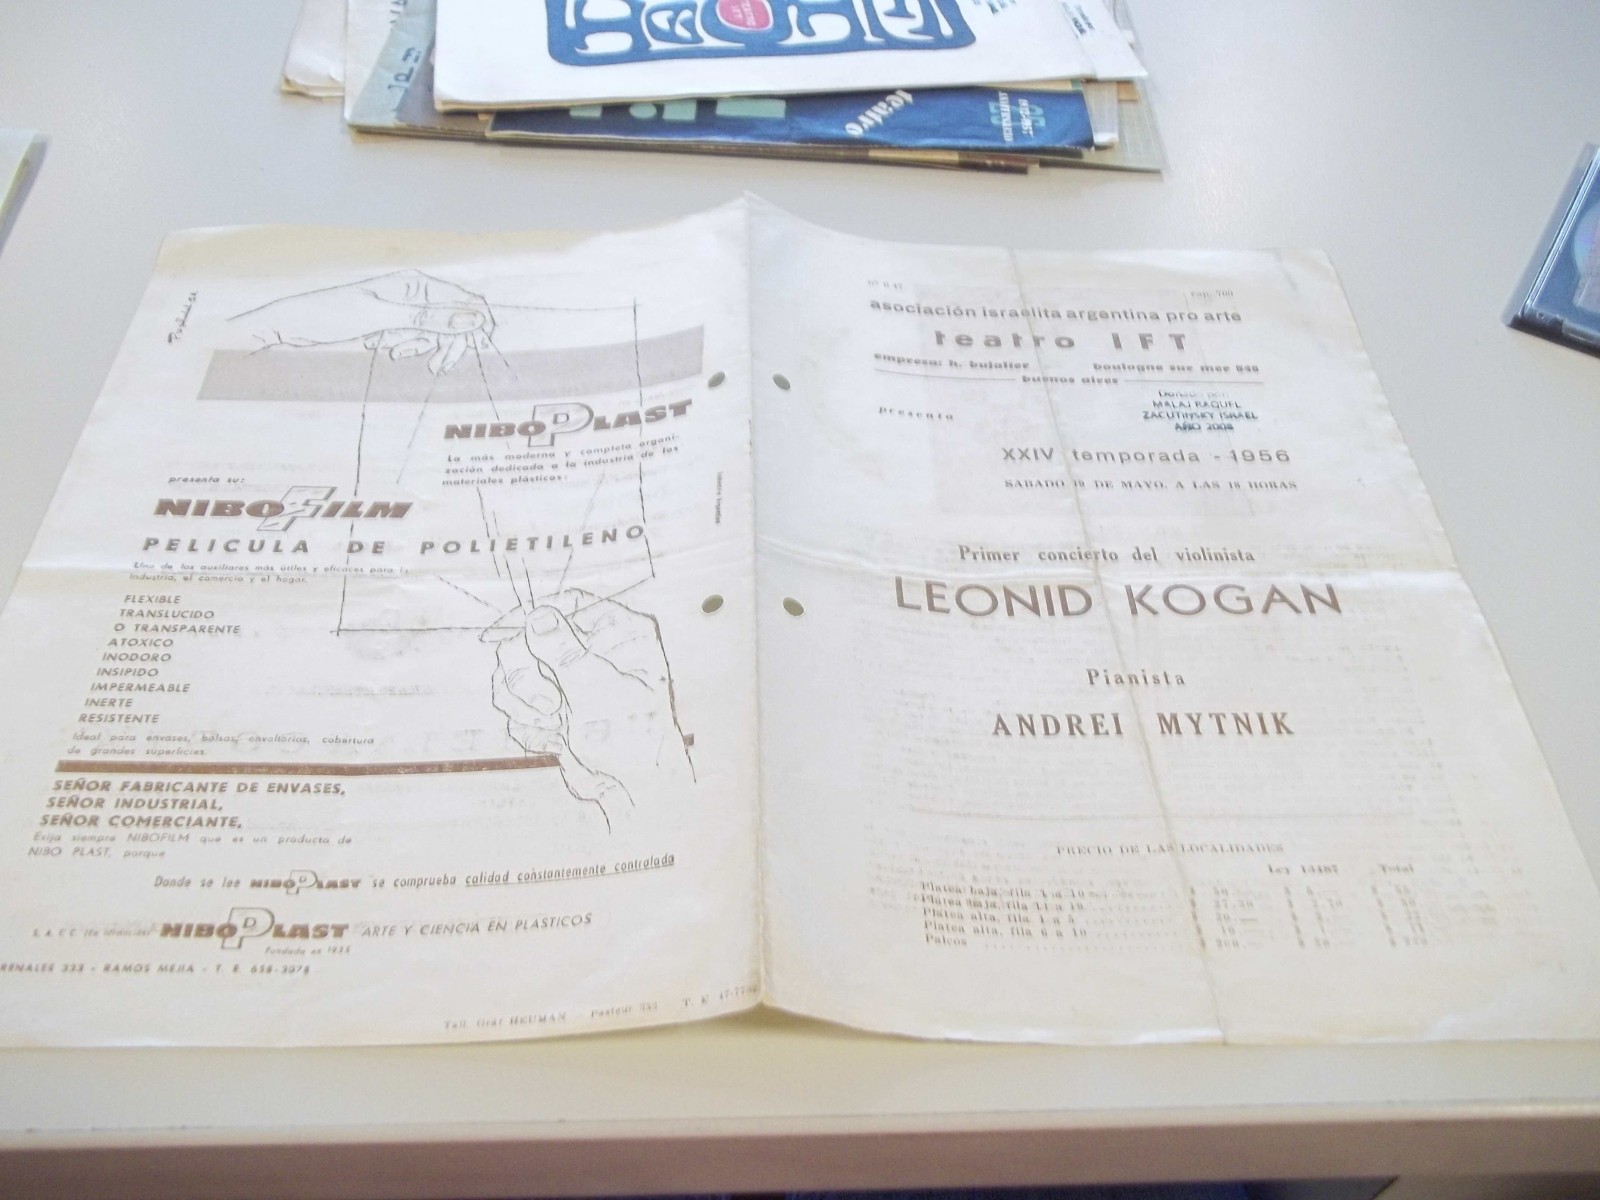 Primer concierto del violinista Leonid Kogan